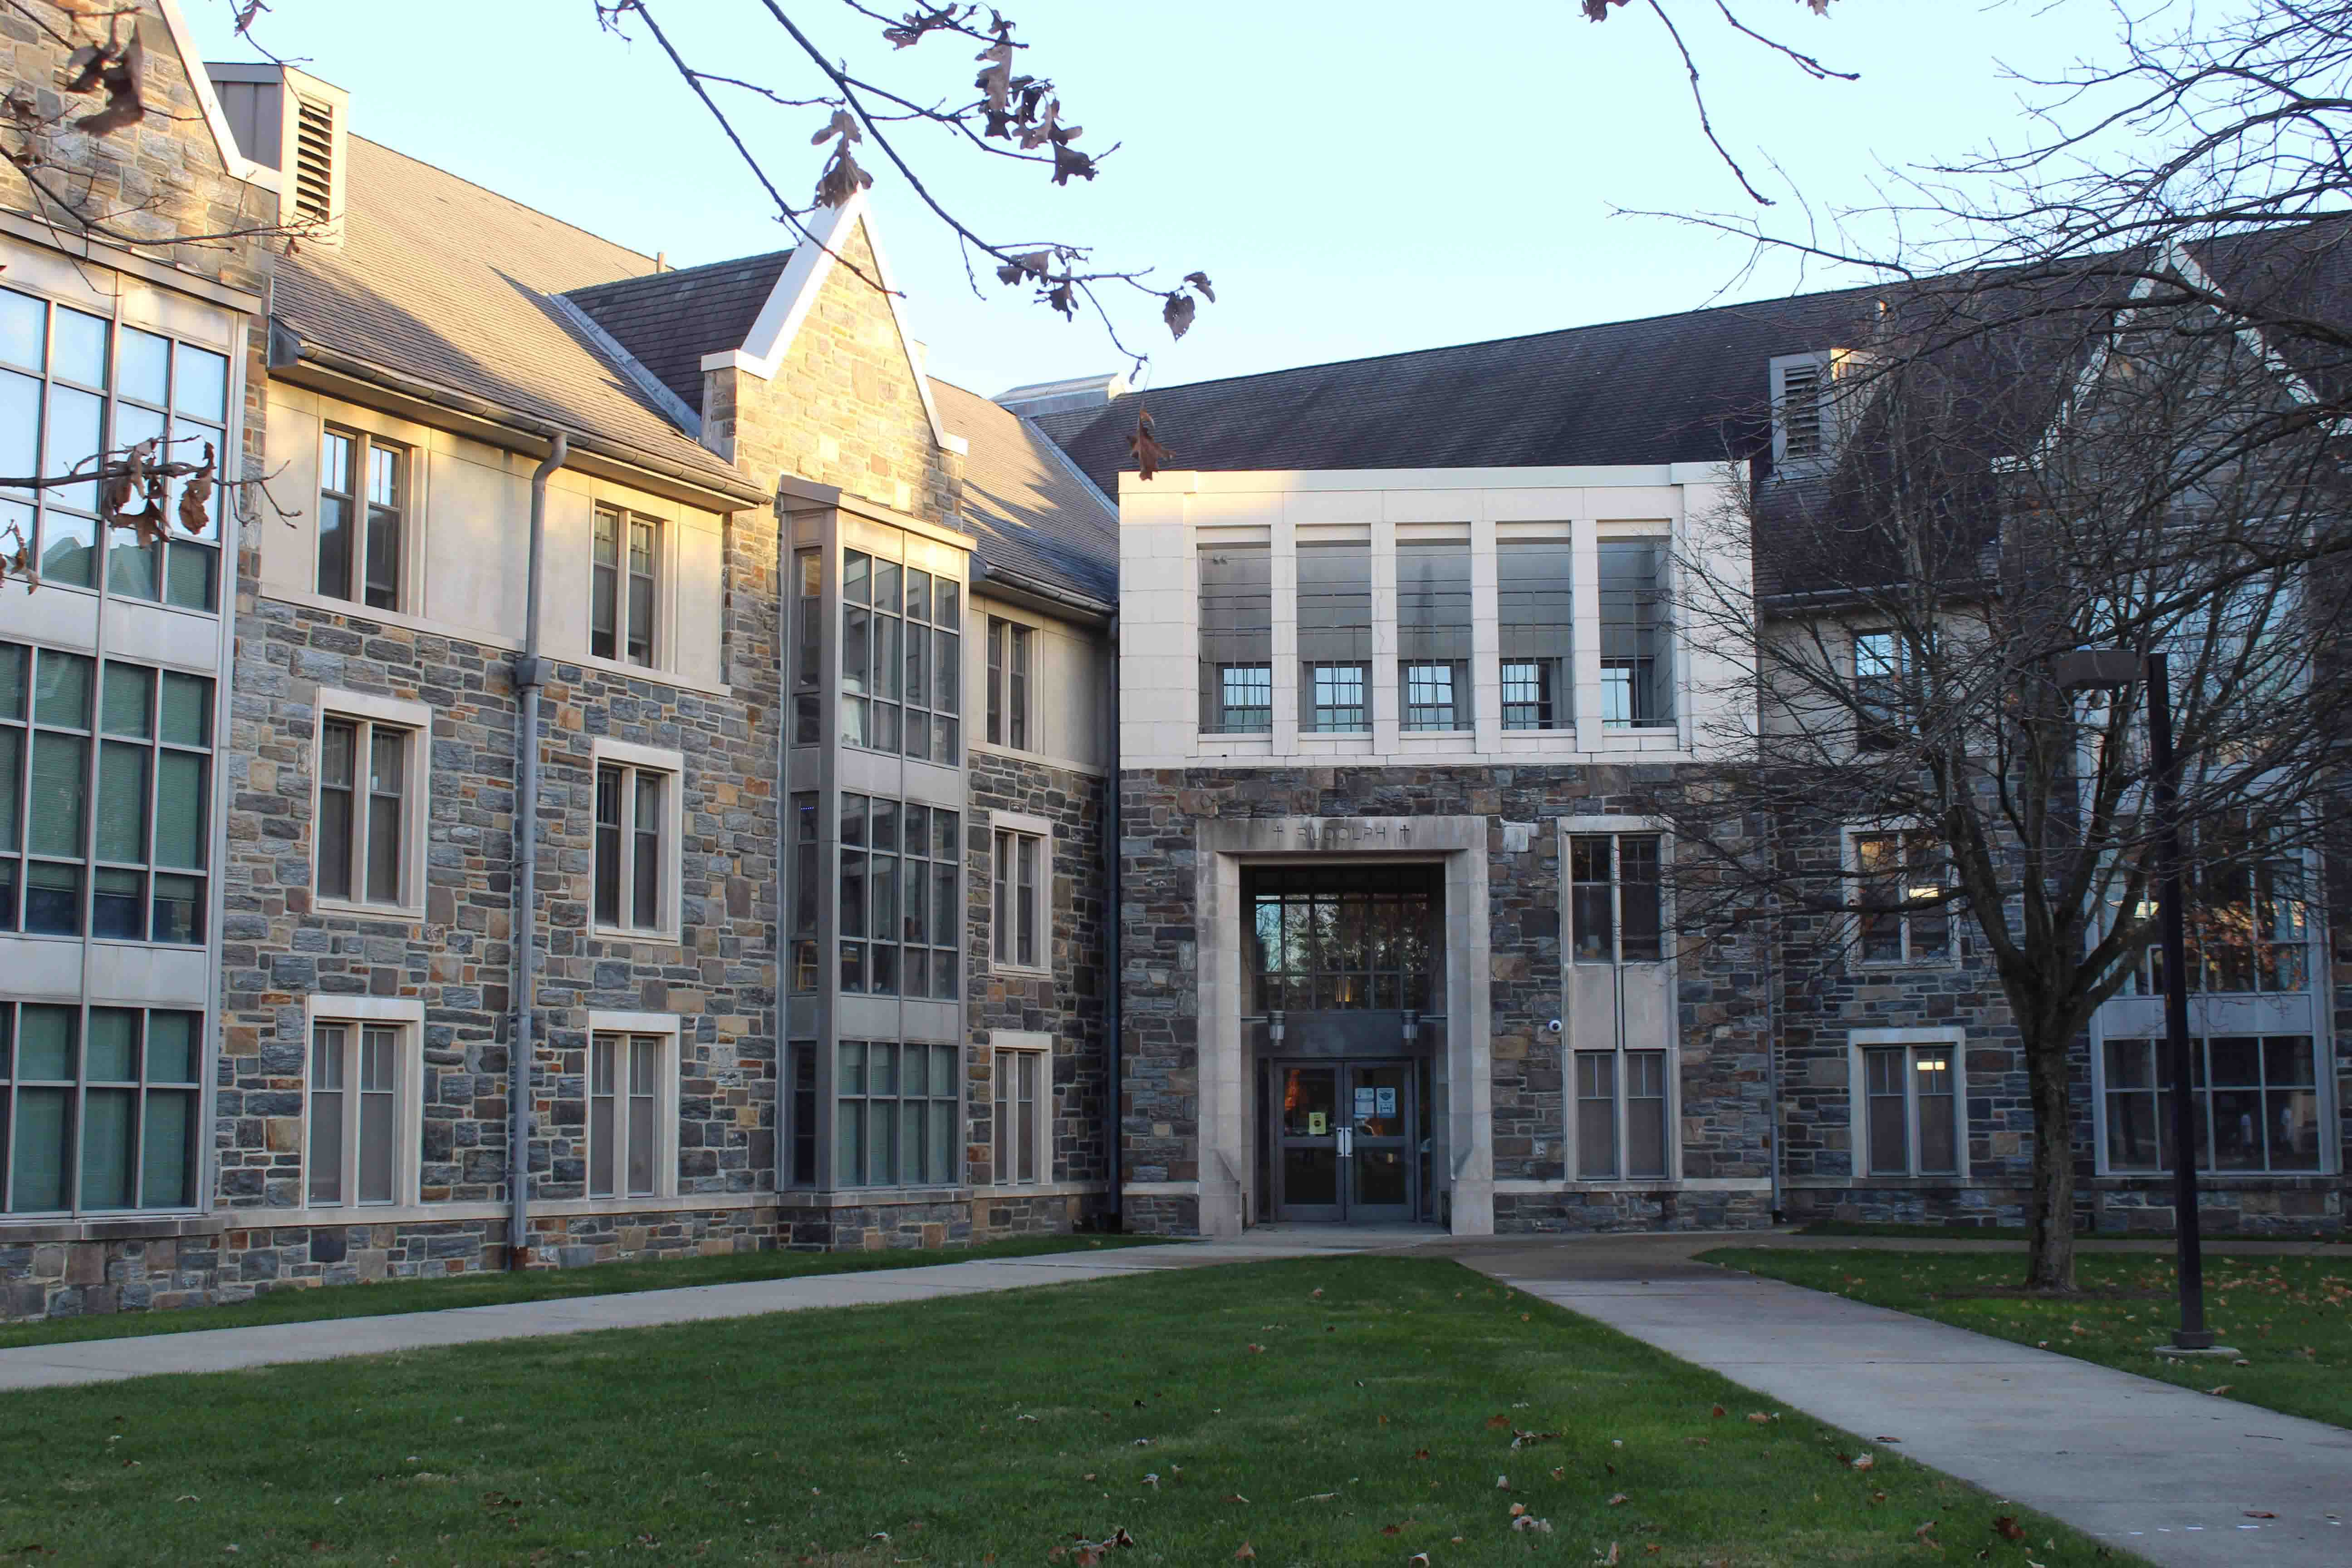 Exterior of Rudolph Hall on Villanova's campus.